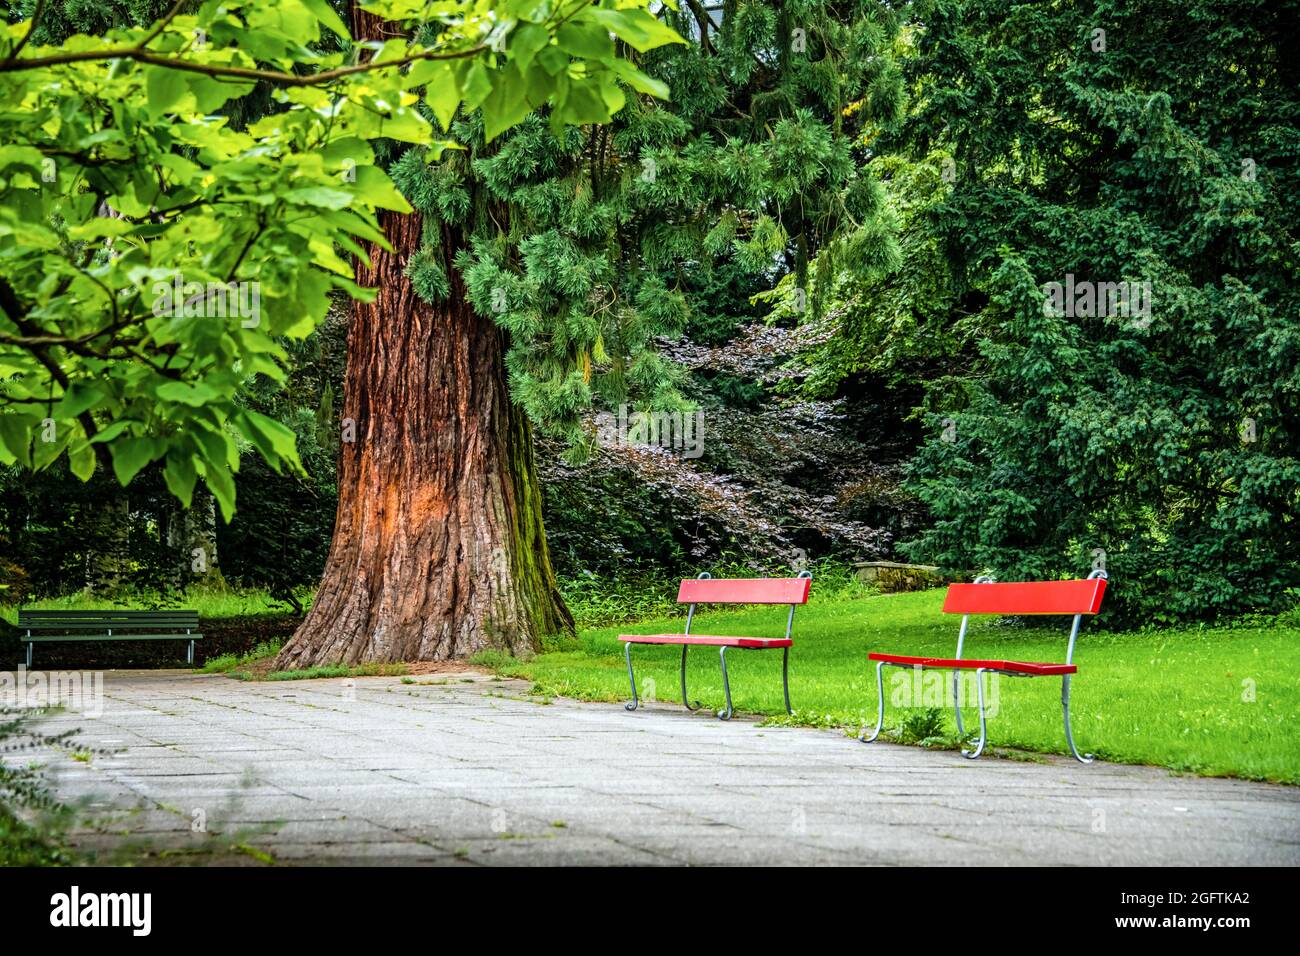 Eine einladende Münze im Stadtpark zum Entspannen und Genießen der grünen Natur an einem Sommertag Stockfoto